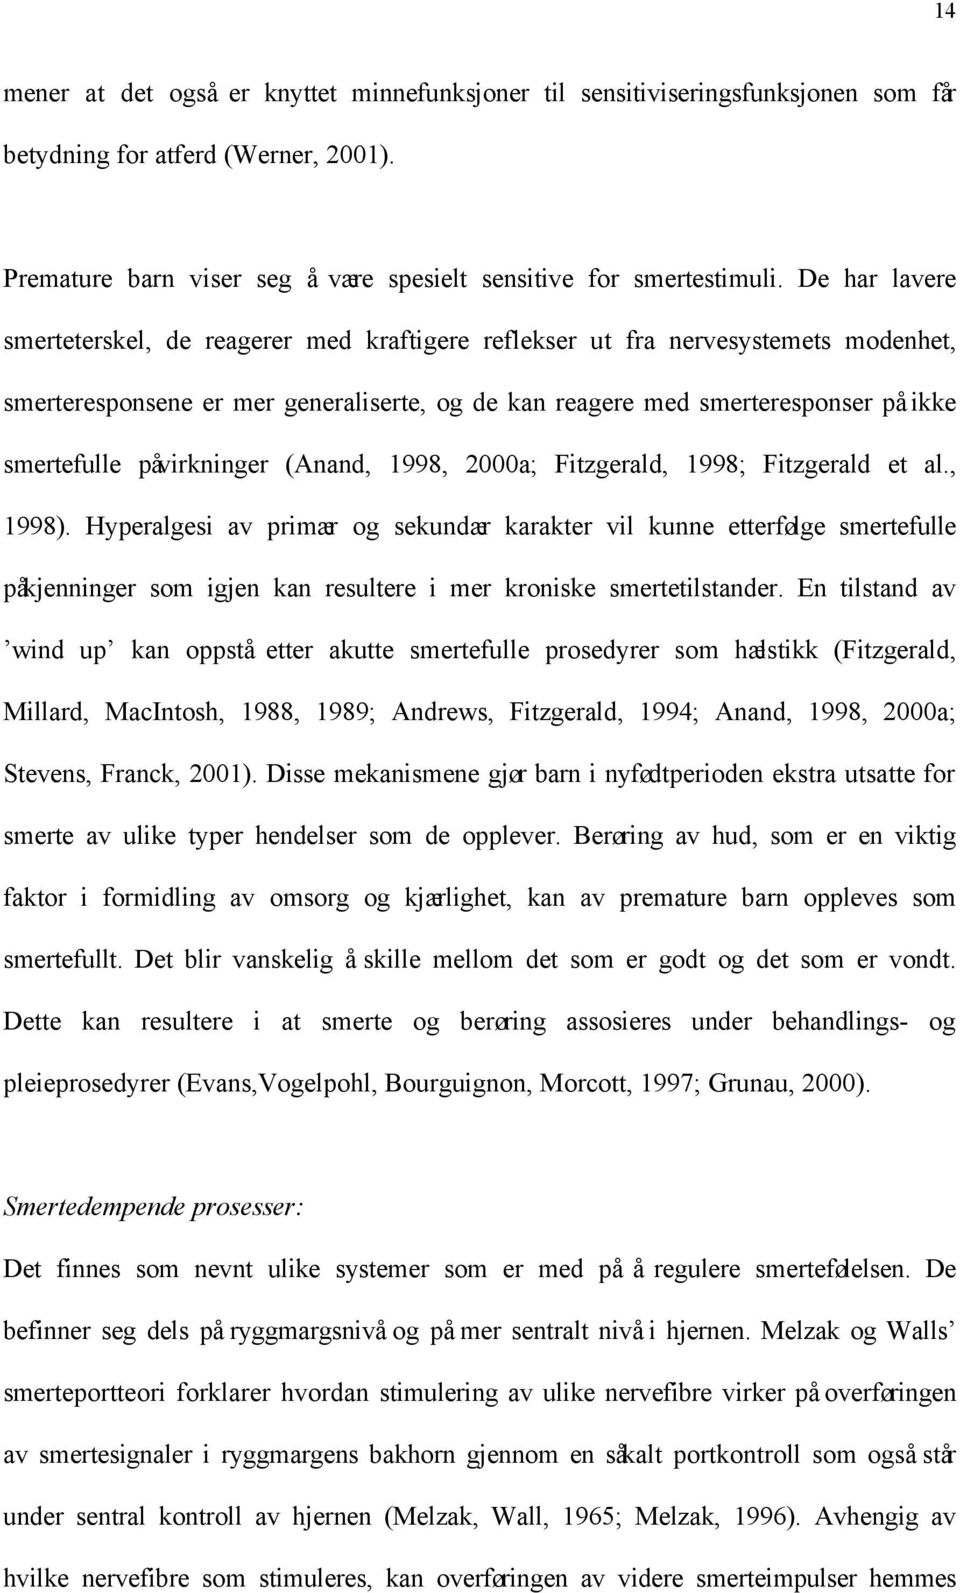 påvirkninger (Anand, 1998, 2000a; Fitzgerald, 1998; Fitzgerald et al., 1998).